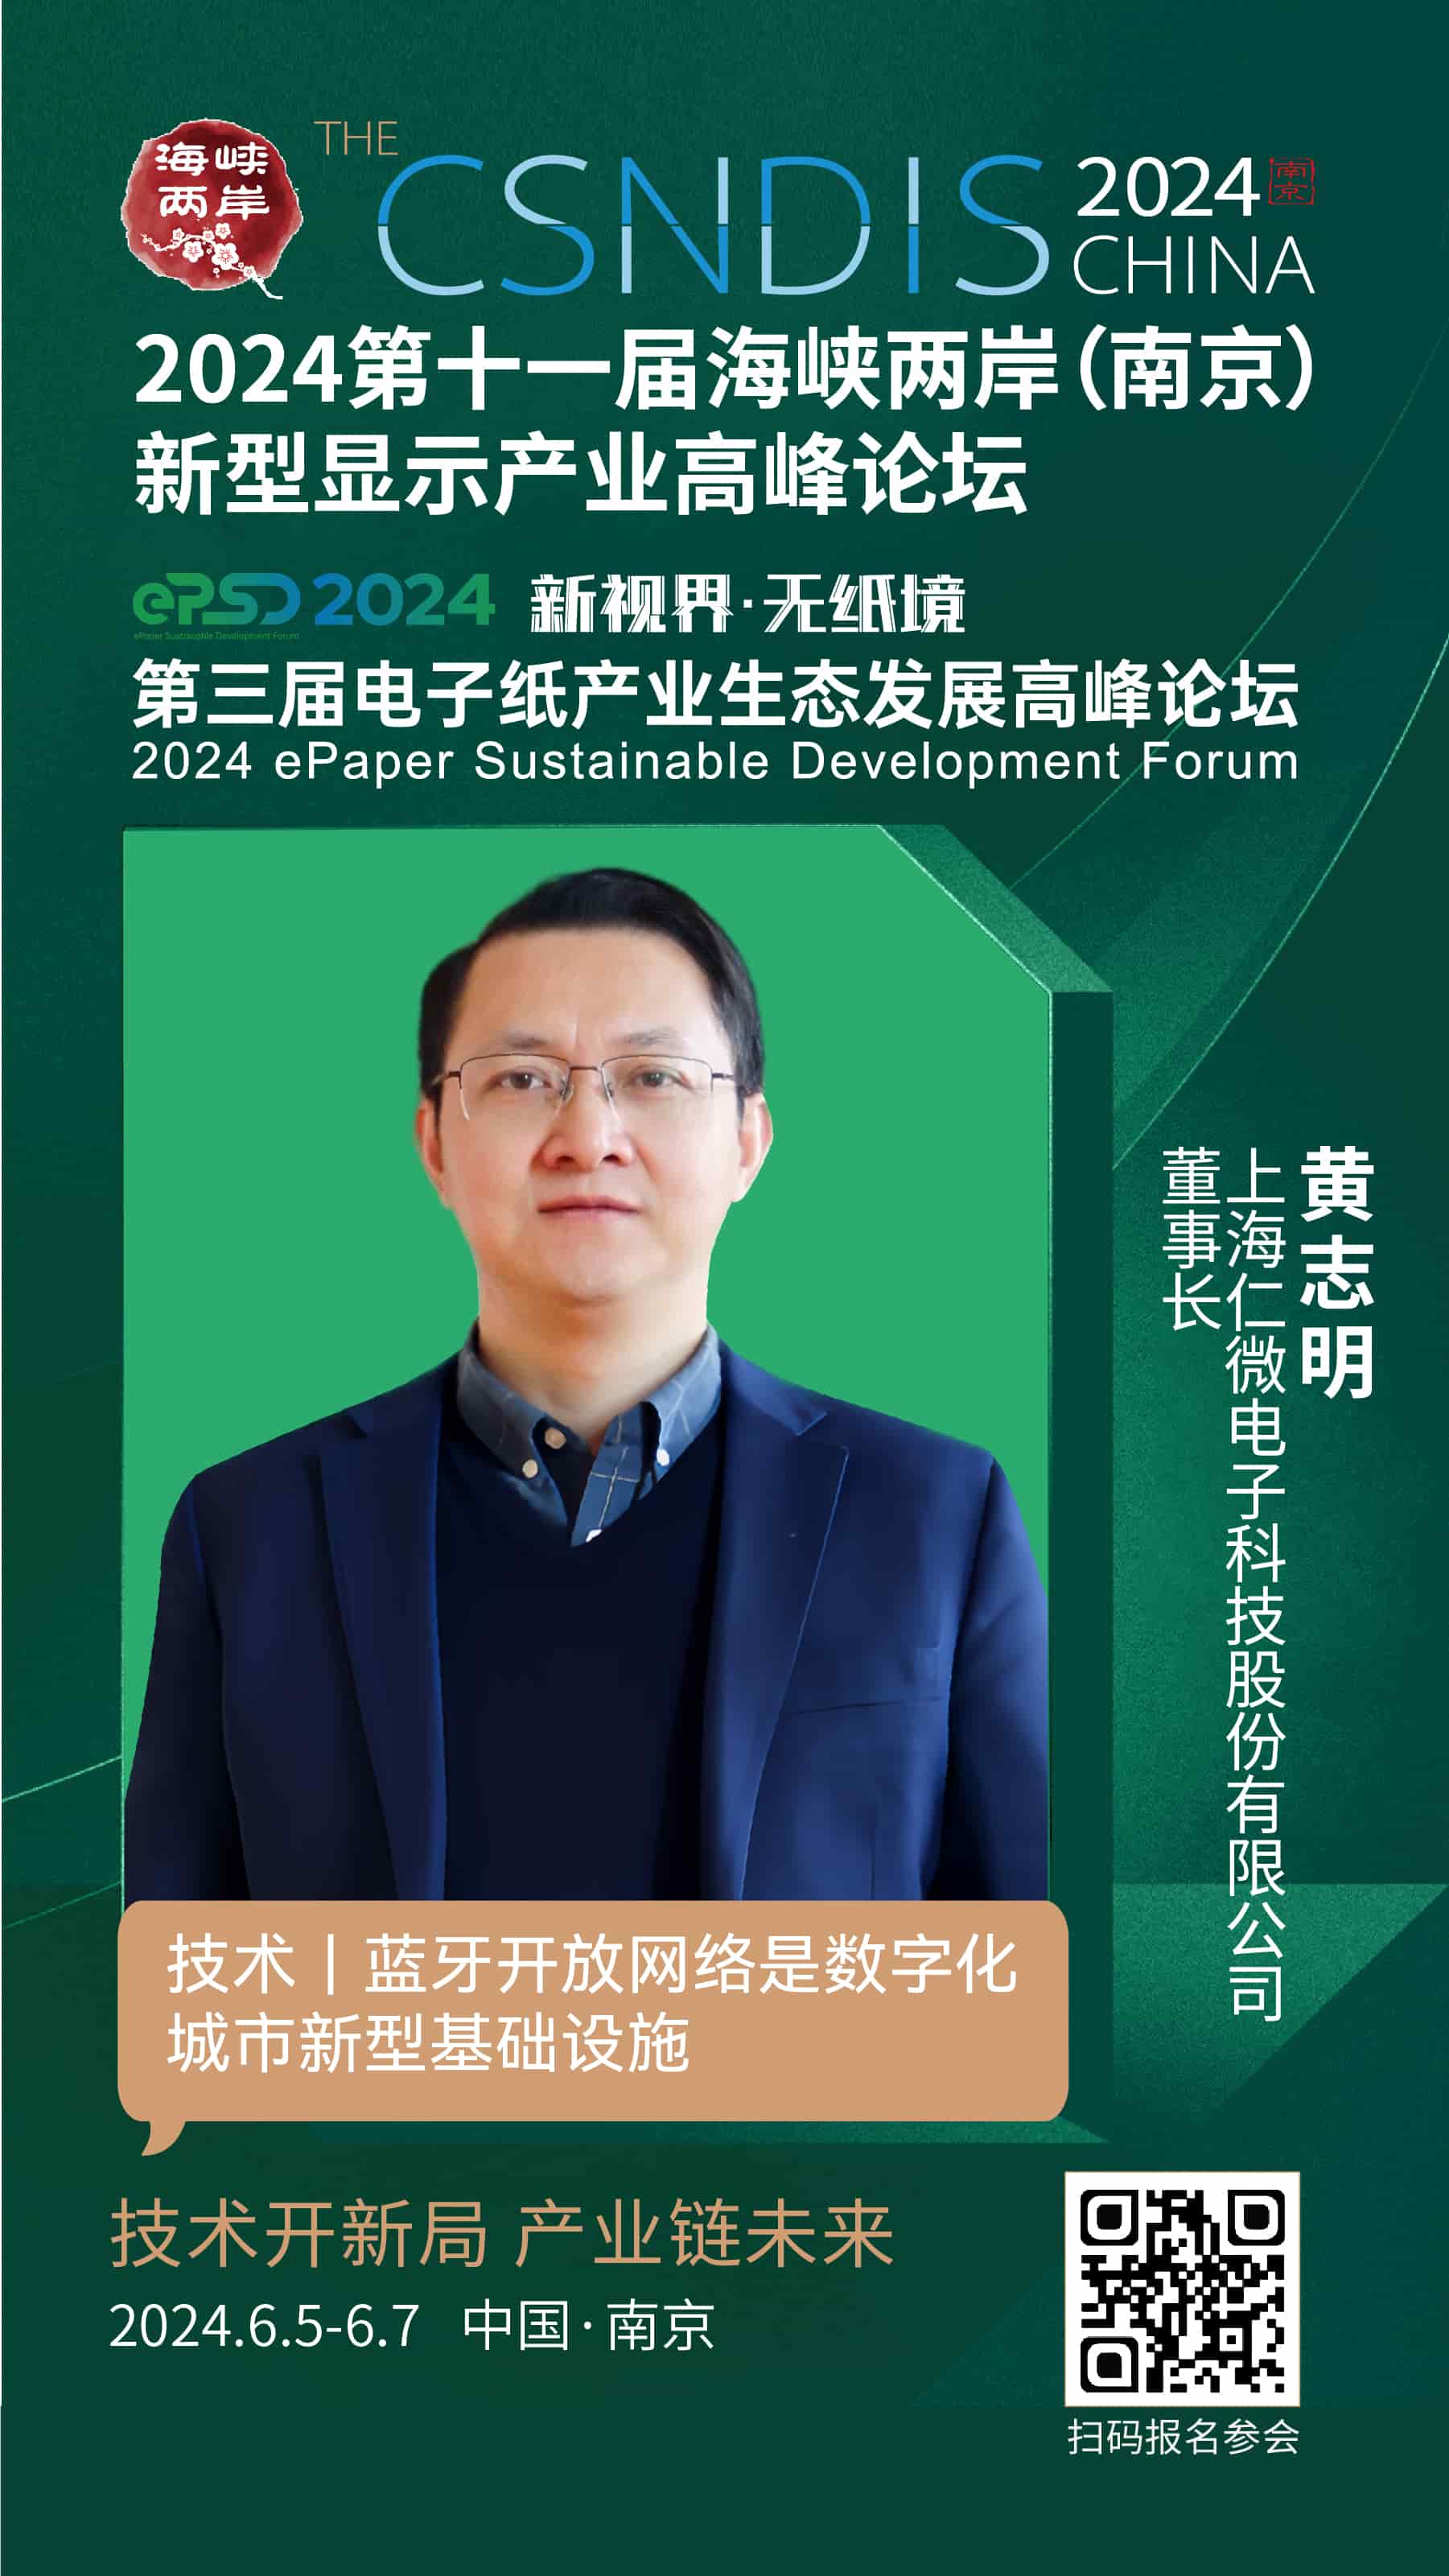 上海仁微电子科技股份有限公司董事长黄志明受邀将出席第十一届海峡两岸（南京）新型显示产业高峰论坛之「电子纸生态峰会」主题演讲